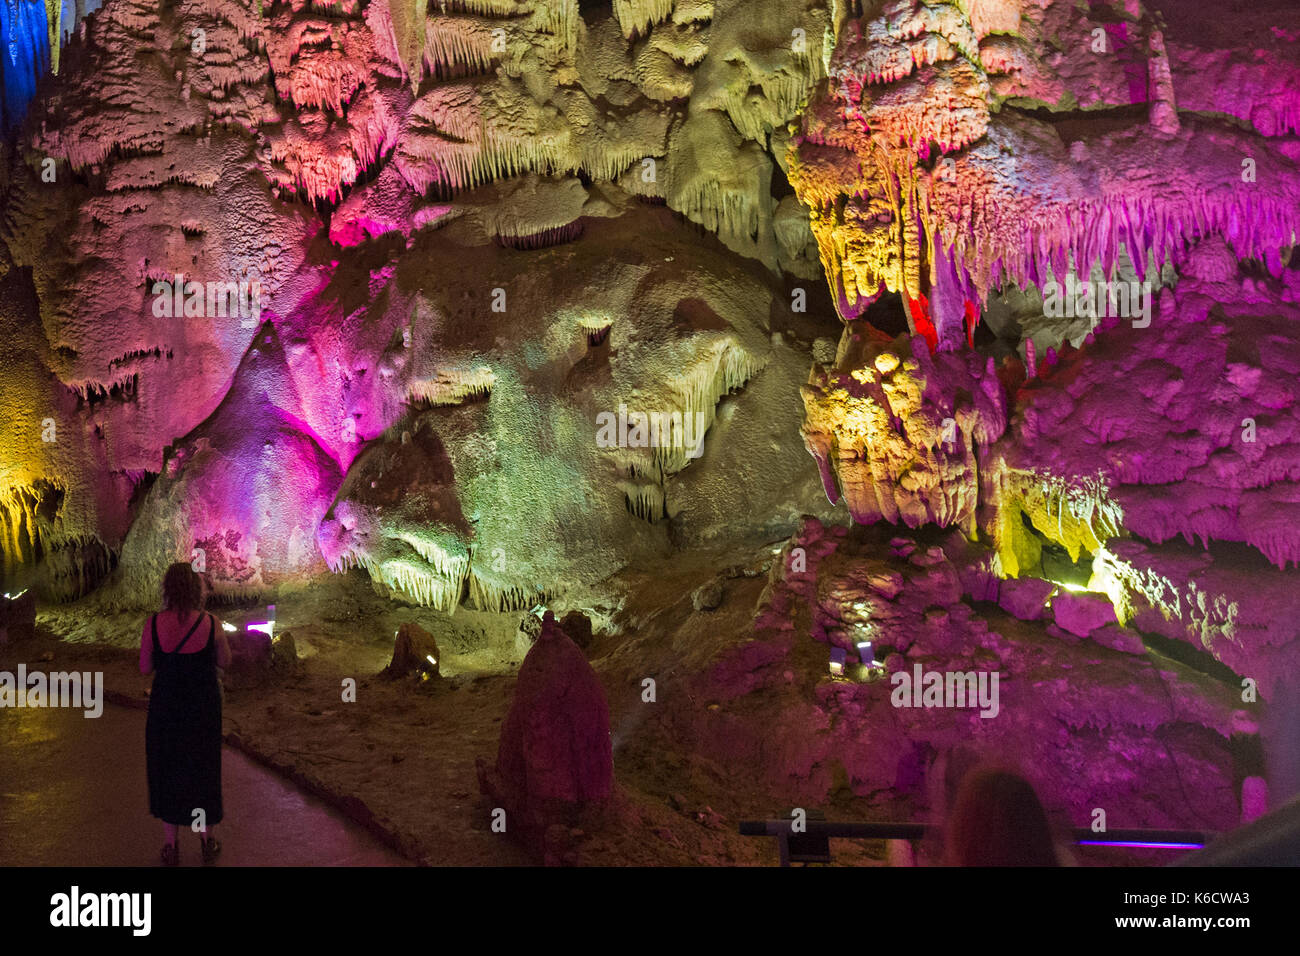 Dentro del sistema de cavernas de Prometeo, al noroeste de Kutaisi en Georgia.Las cuevas, estalactitas y estalagmitas, están iluminados con luces de colores. Foto de stock